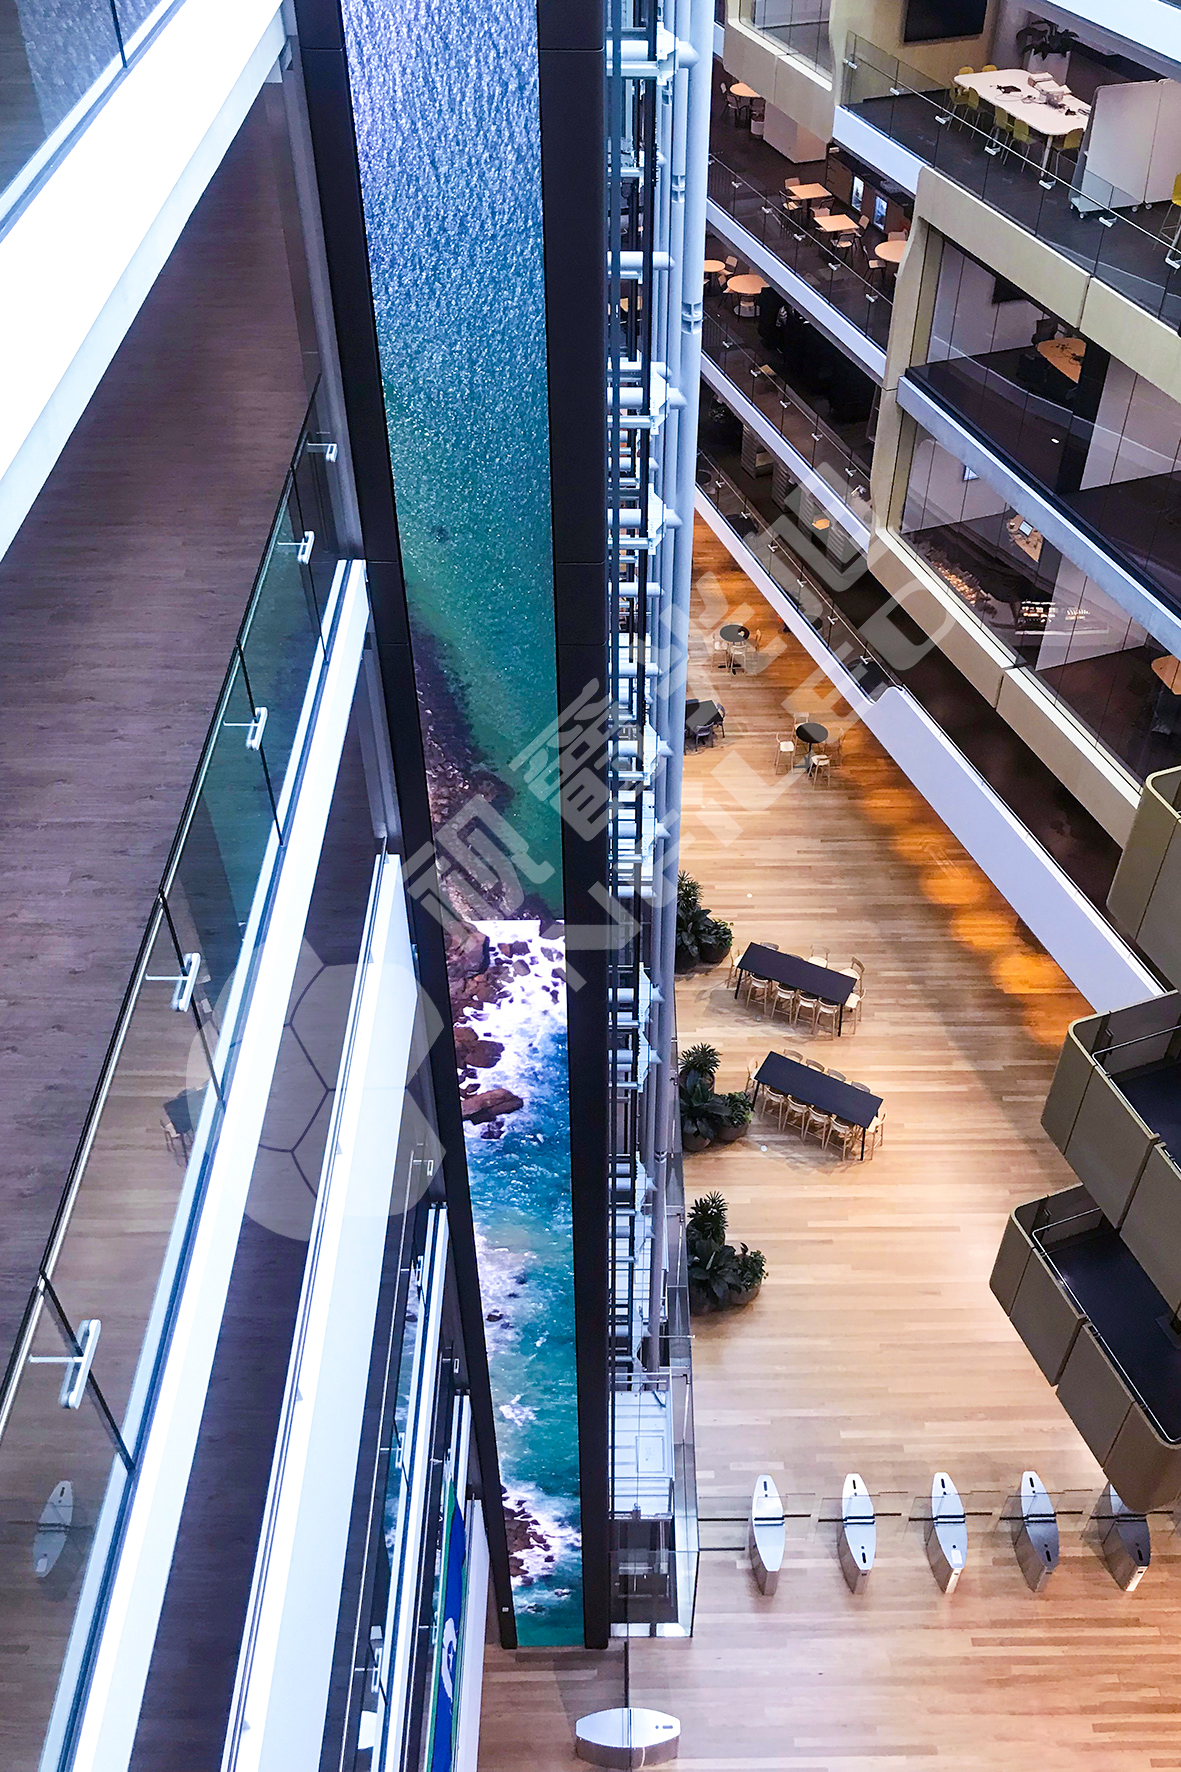 视爵光旭为悉尼一家大型企业总部量身打造一个7层31米高的电梯间LED显示屏